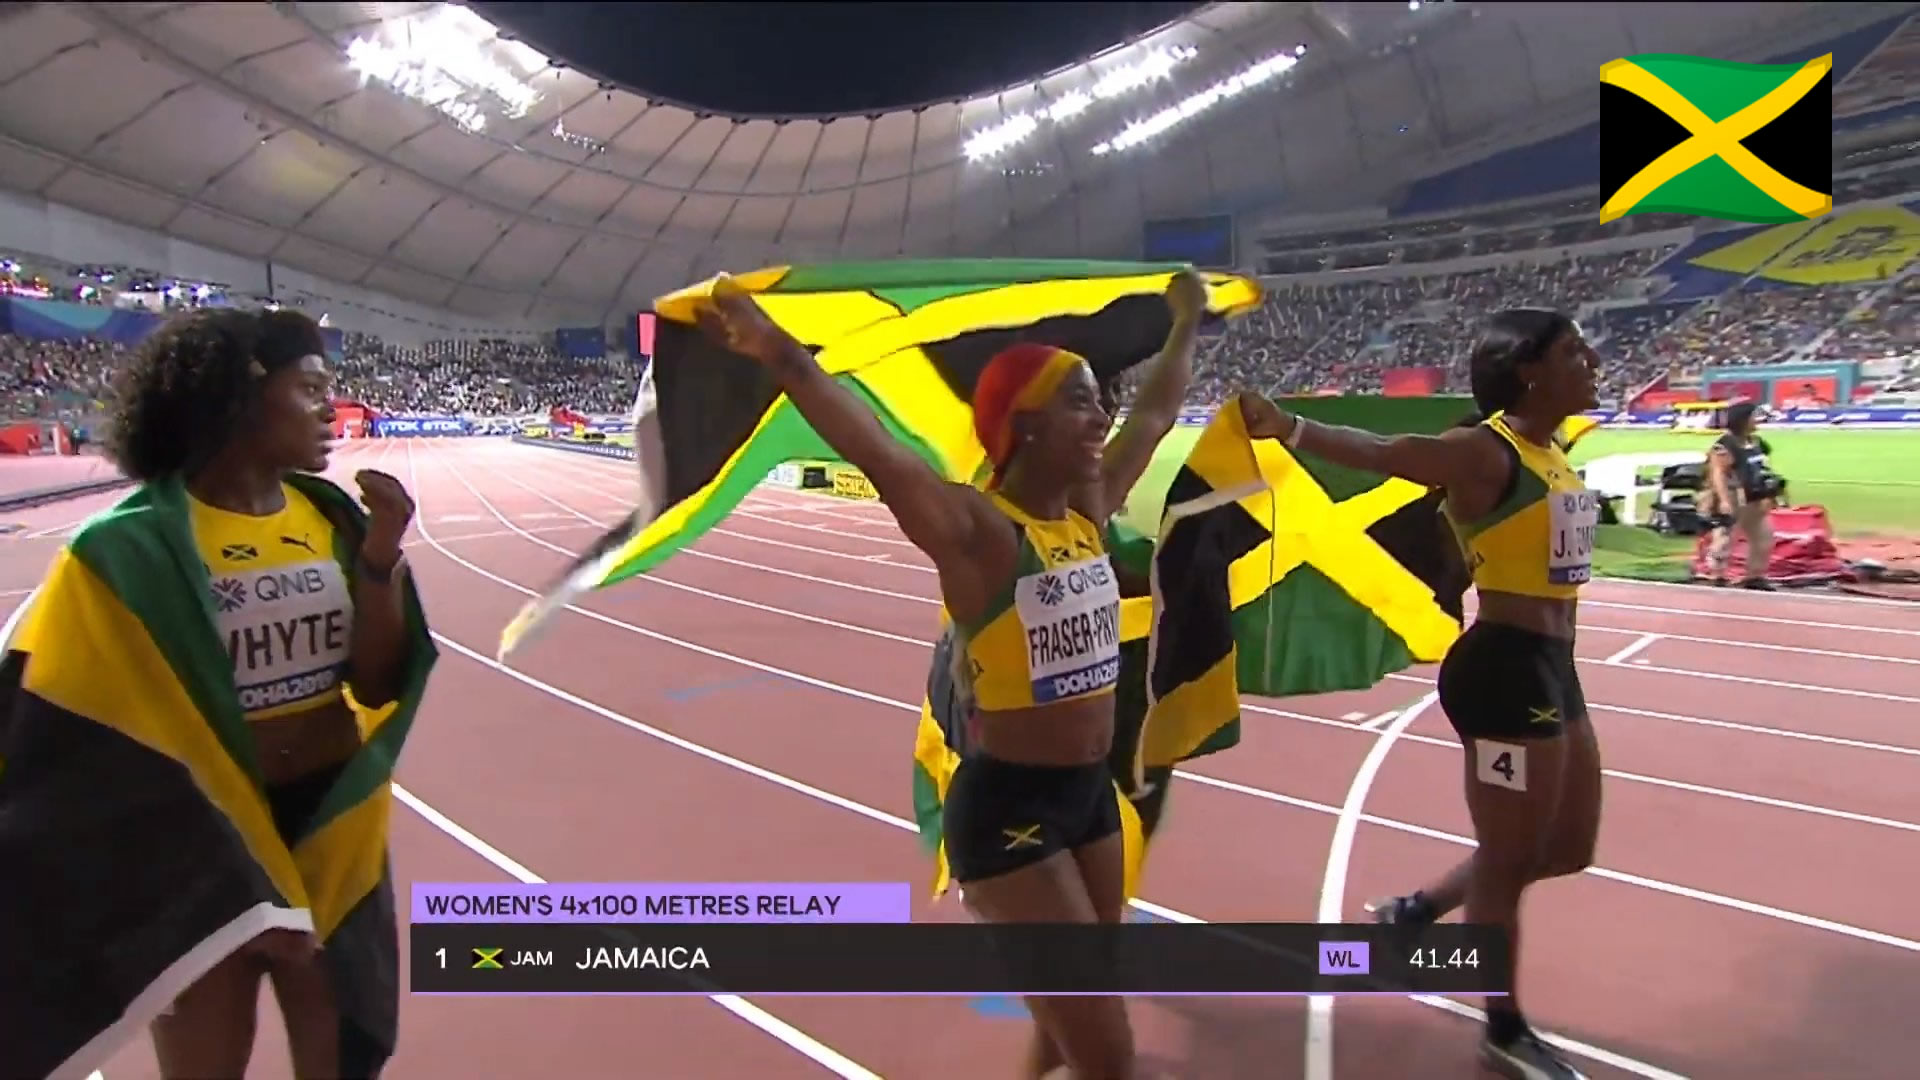 Watch: Team Jamaica wins Women's 4x100m relay GOLD